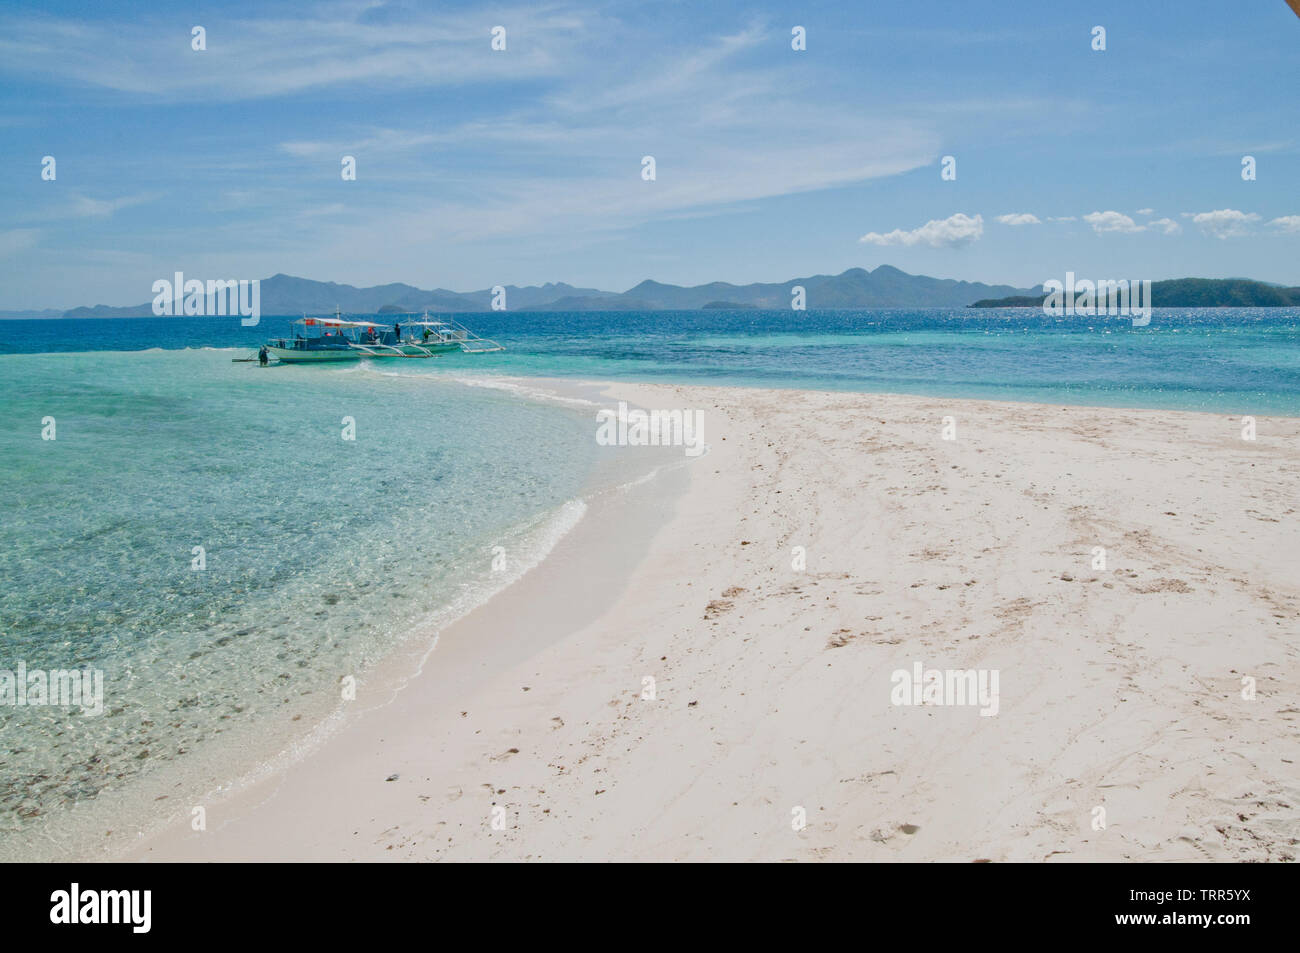 Palawan è stato votato il migliore isola sulla terra da viaggi e tempo libero per la sua polvere delle spiagge di sabbia bianca, l'azzurro del mare e del cielo, il clima caldo e ricco di acque. Foto Stock